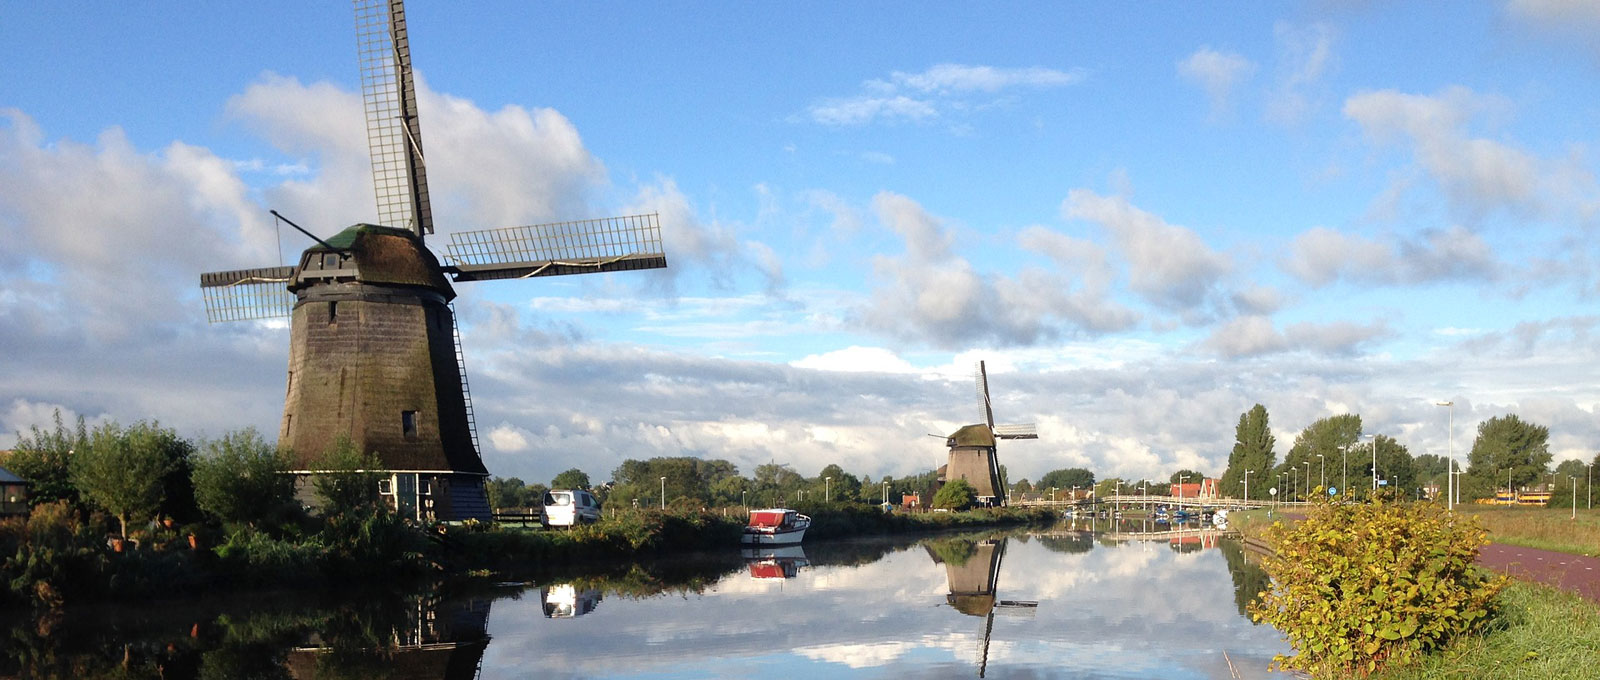 Windmühlen in Holland. © pixabay.com